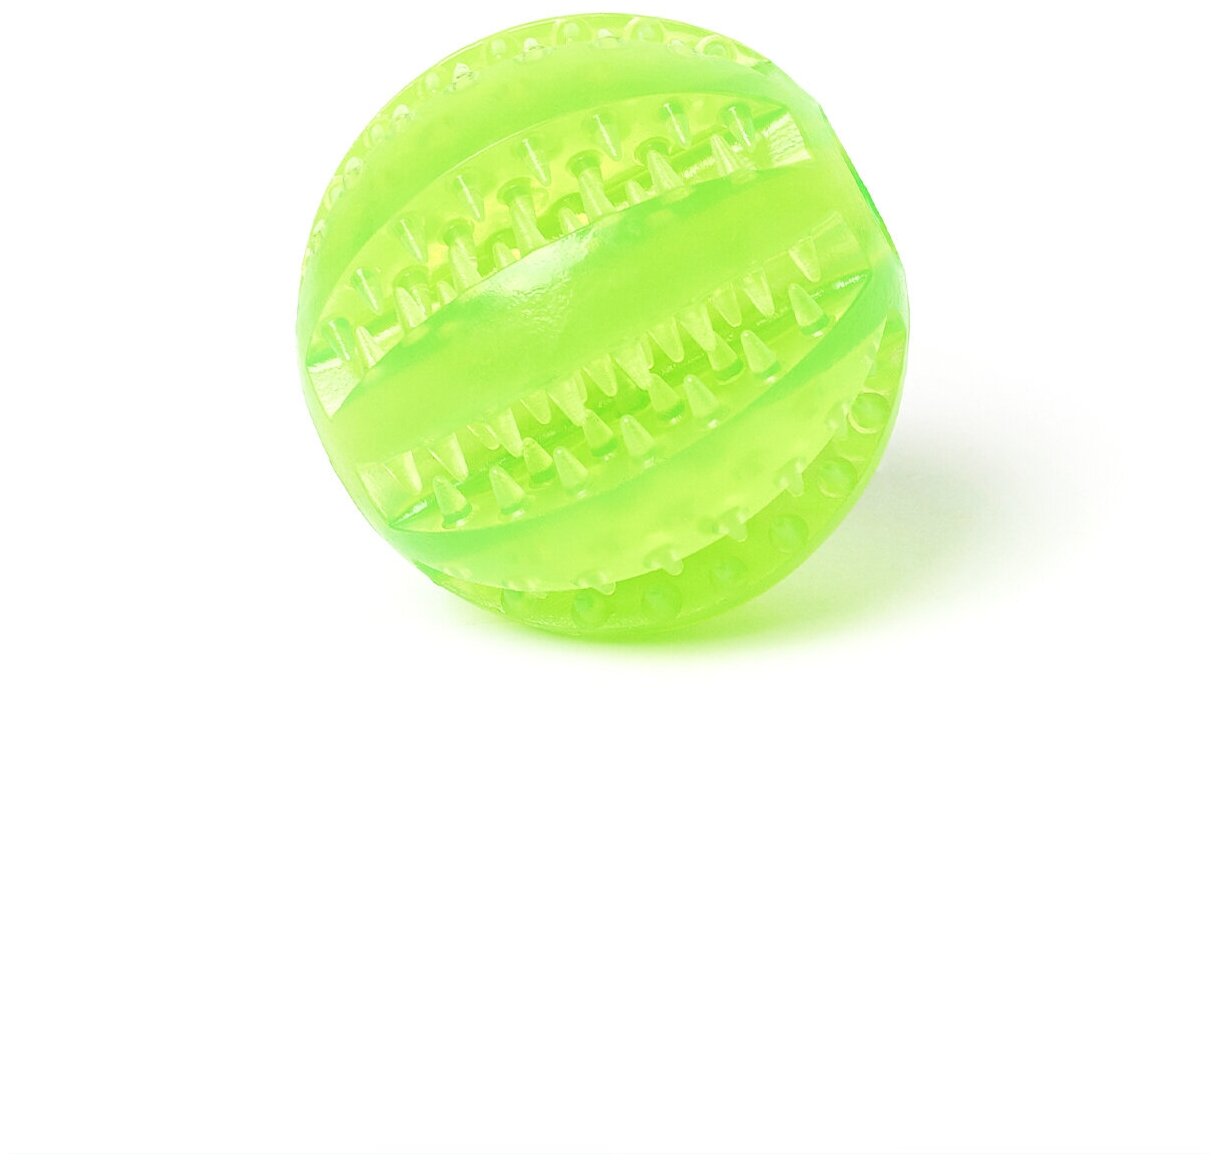 Игрушка мяч для собак резиновый неубиваемый, Чистые клыки, Играй Гуляй, диаметр - 5 см, салатовый